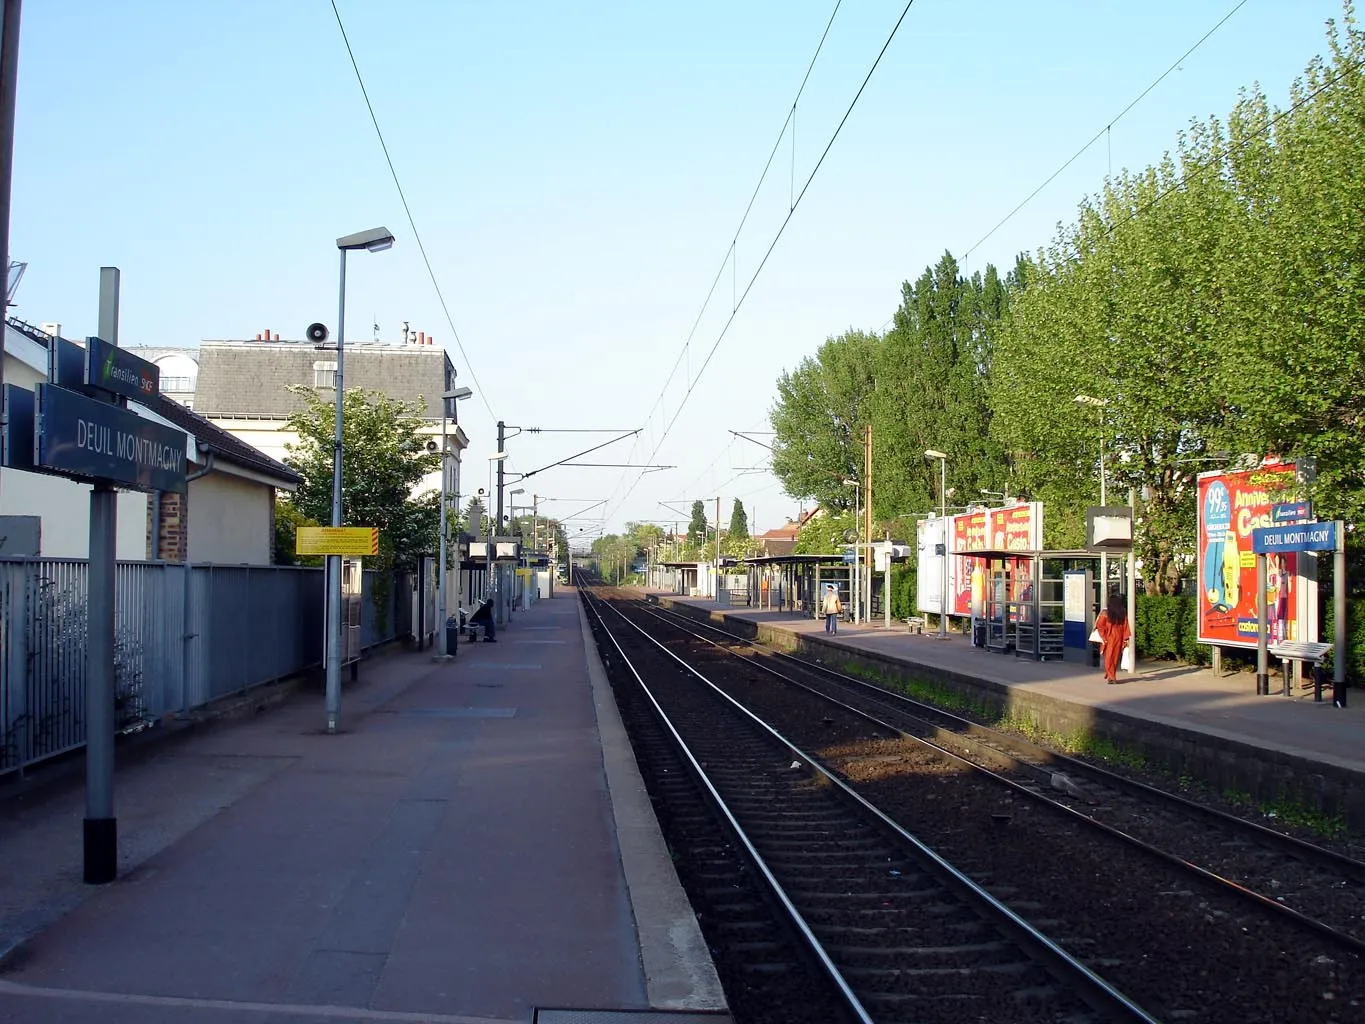 Photo showing: Gare de Deuil - Montmagny à Deuil-la-Barre (Val-d'Oise), France